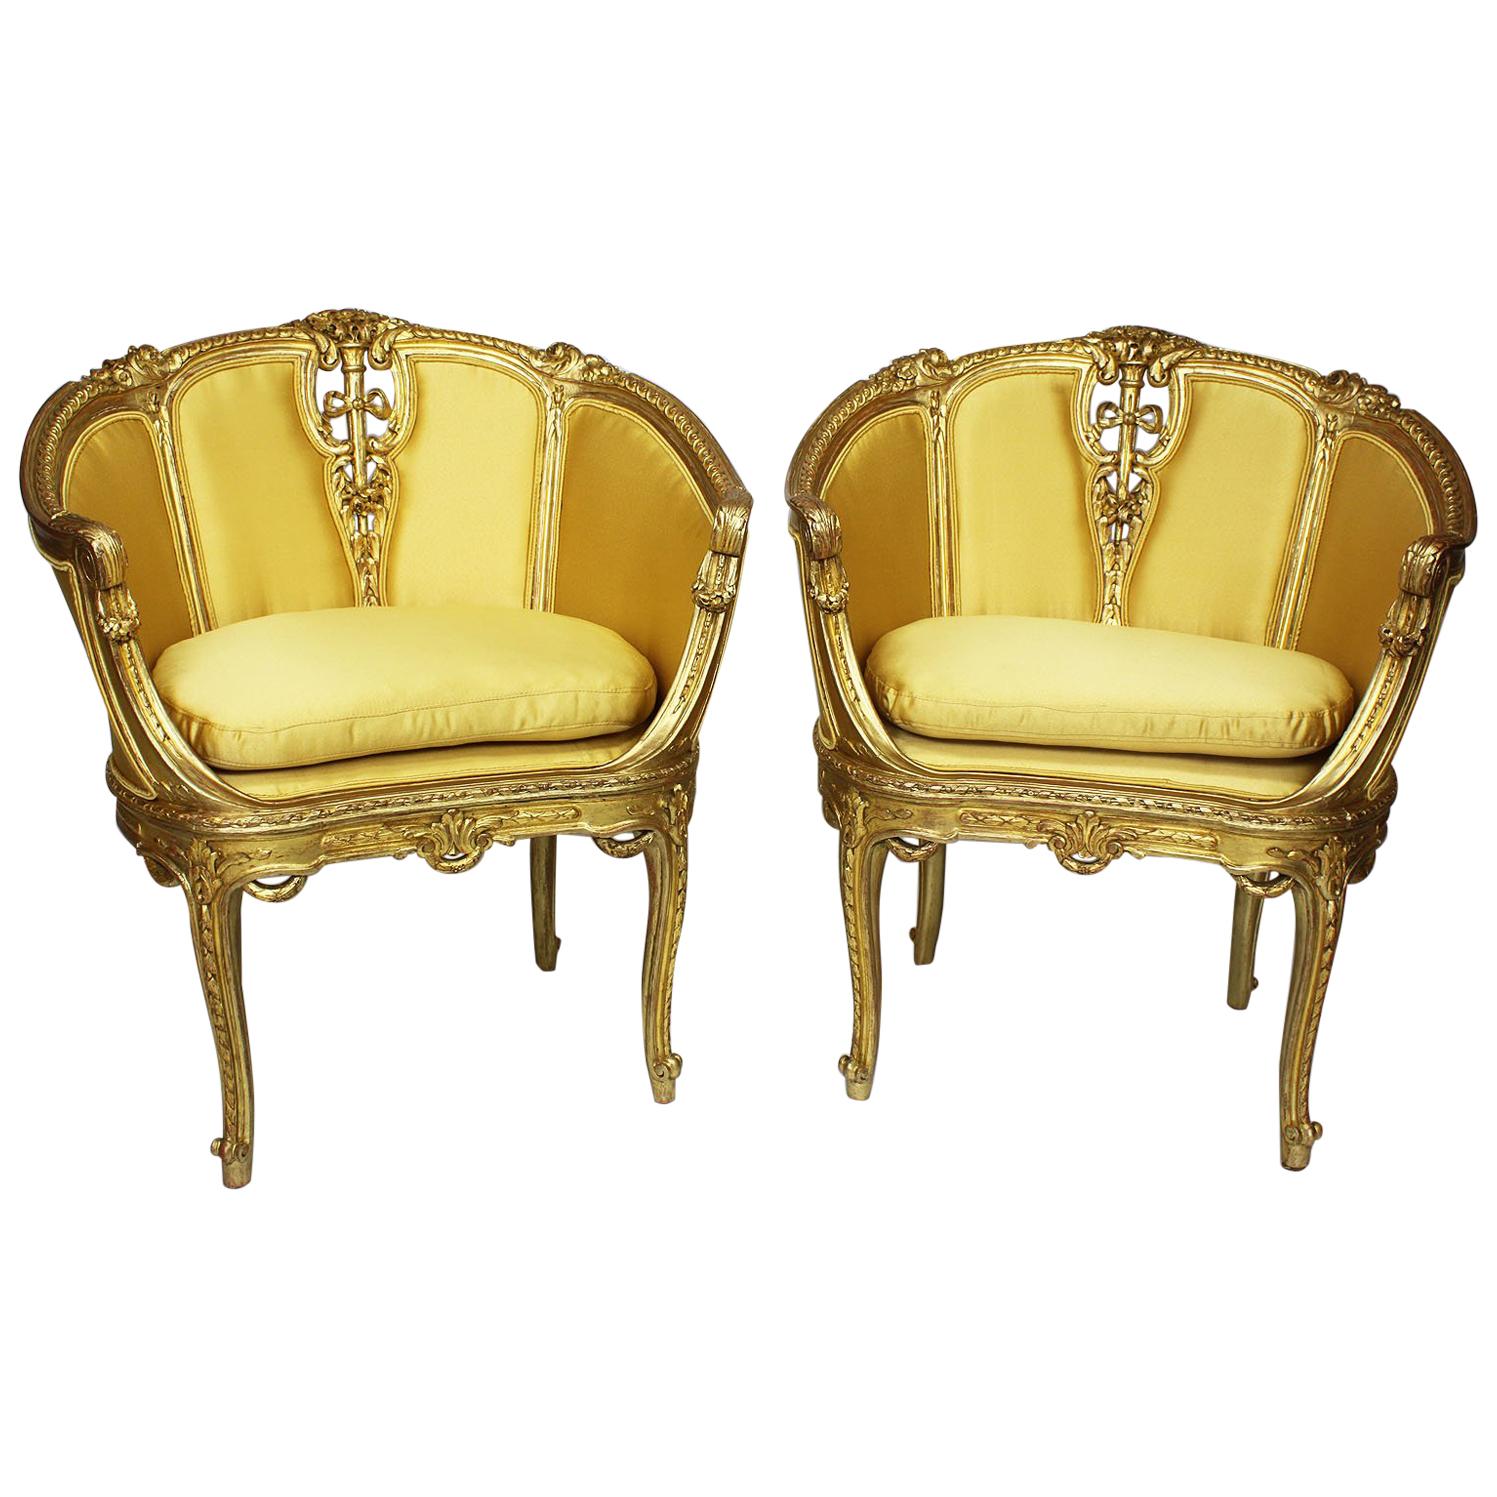 Paire de fauteuils bergères en bois doré sculpté de style Louis XV de la Belle Époque française